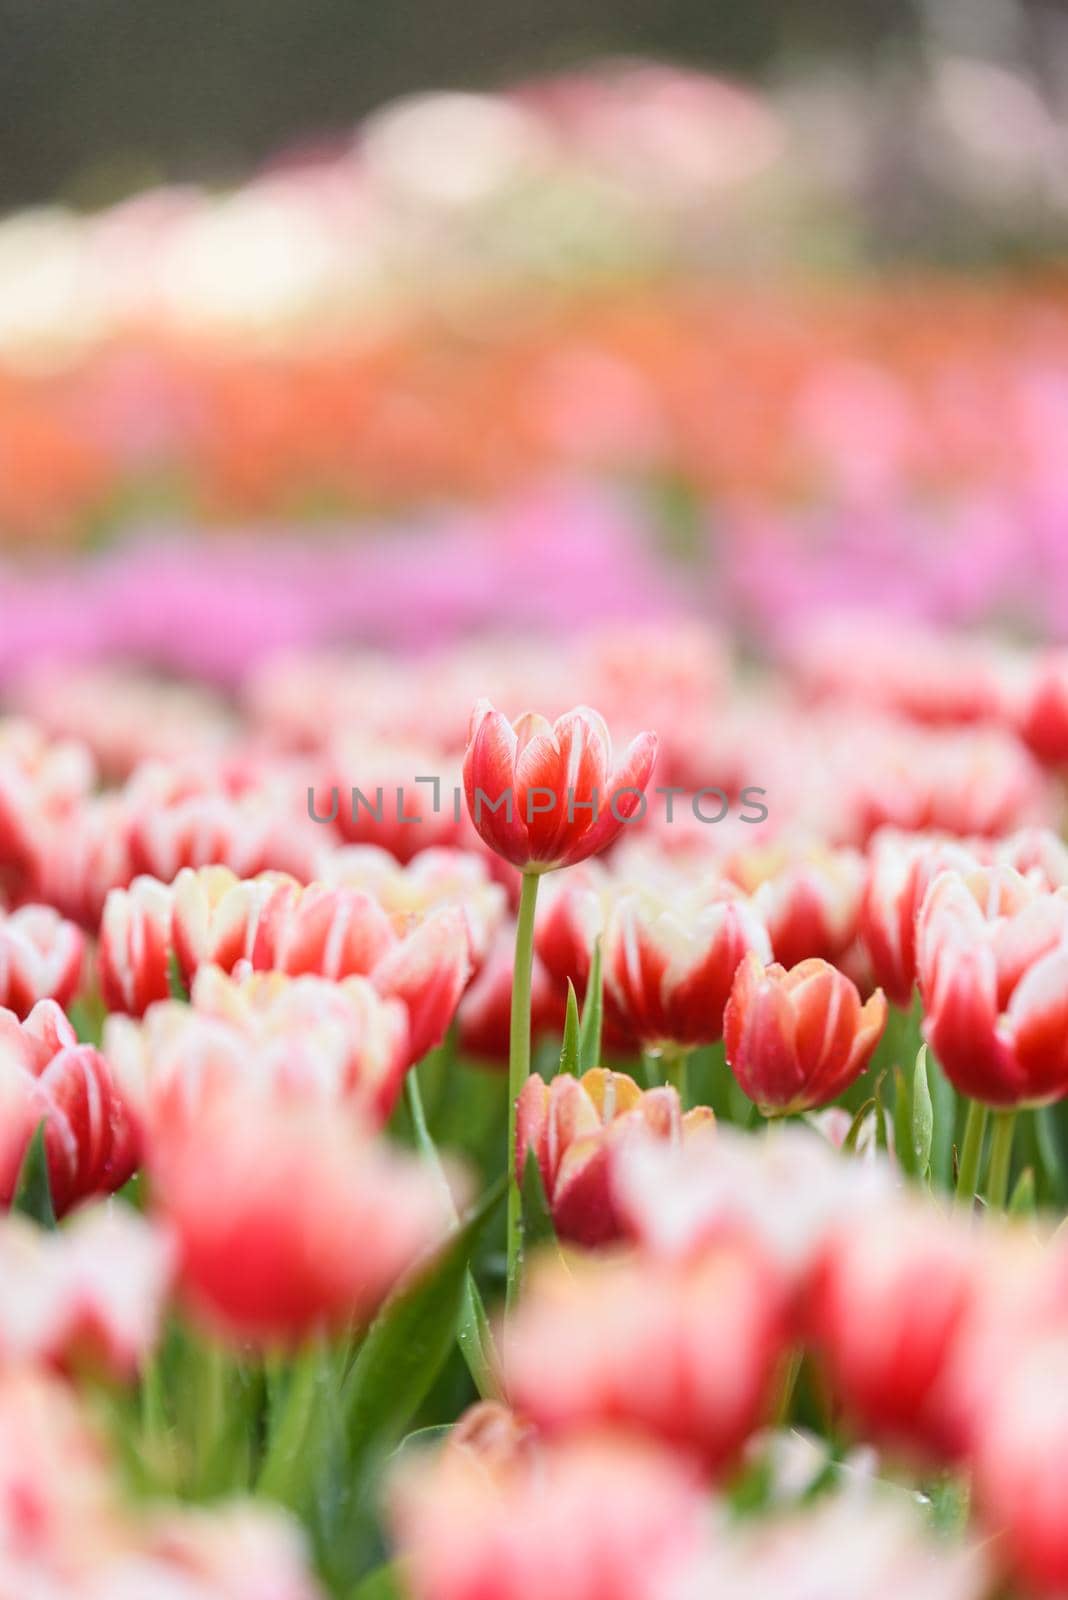 tulip flowers in the garden by Wmpix